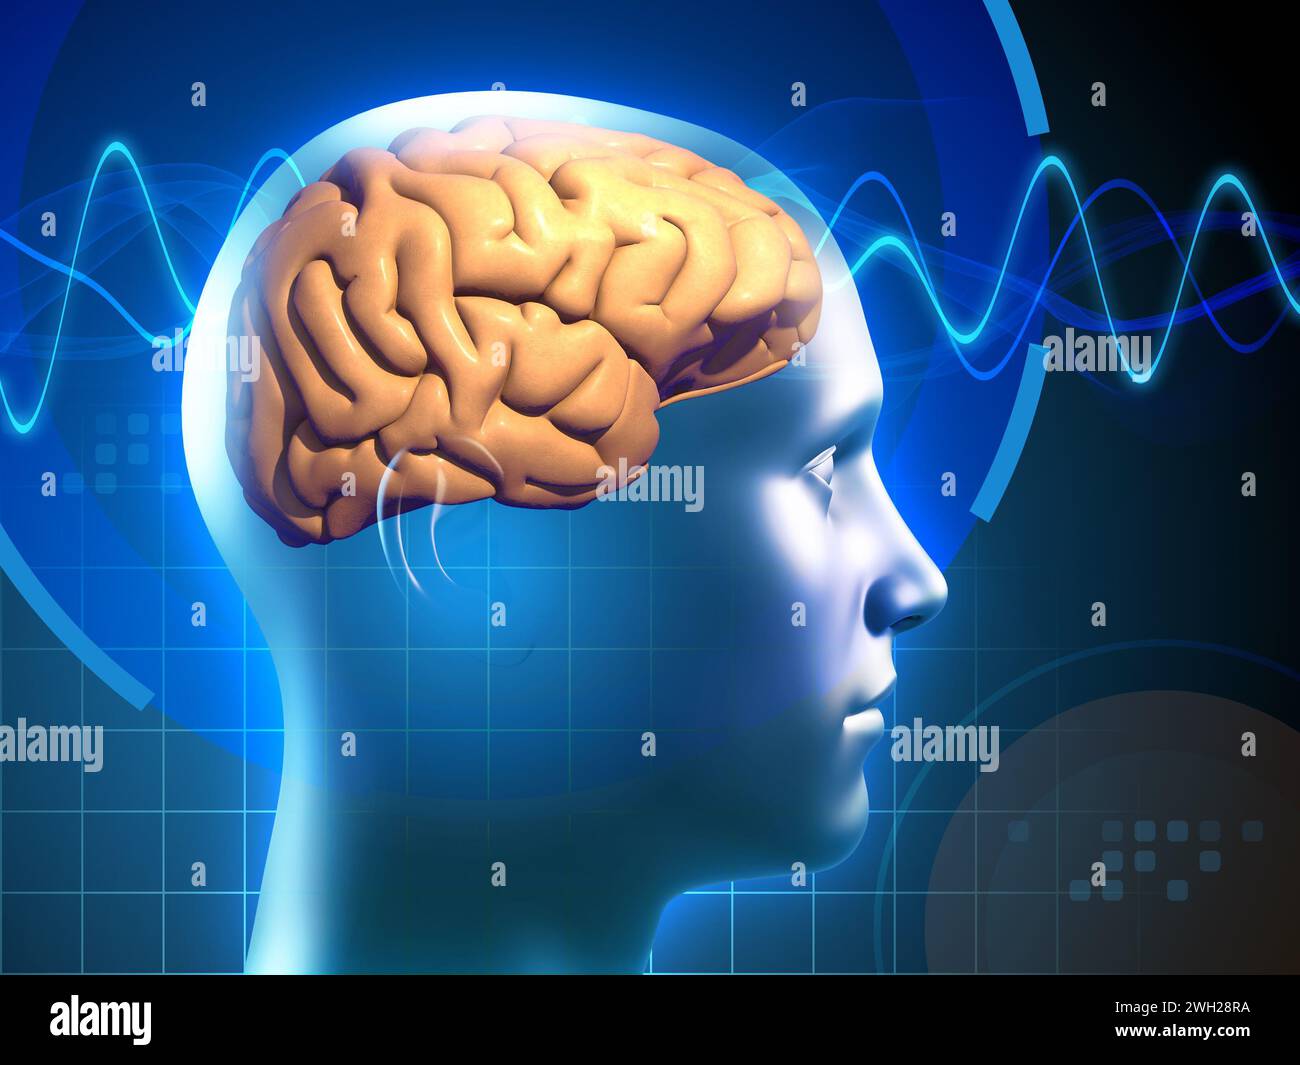 Un'immagine di un cervello umano, attraversato da segnali elettrici, che rappresenta i processi mentali in azione. Illustrazione digitale, rendering 3D. Foto Stock